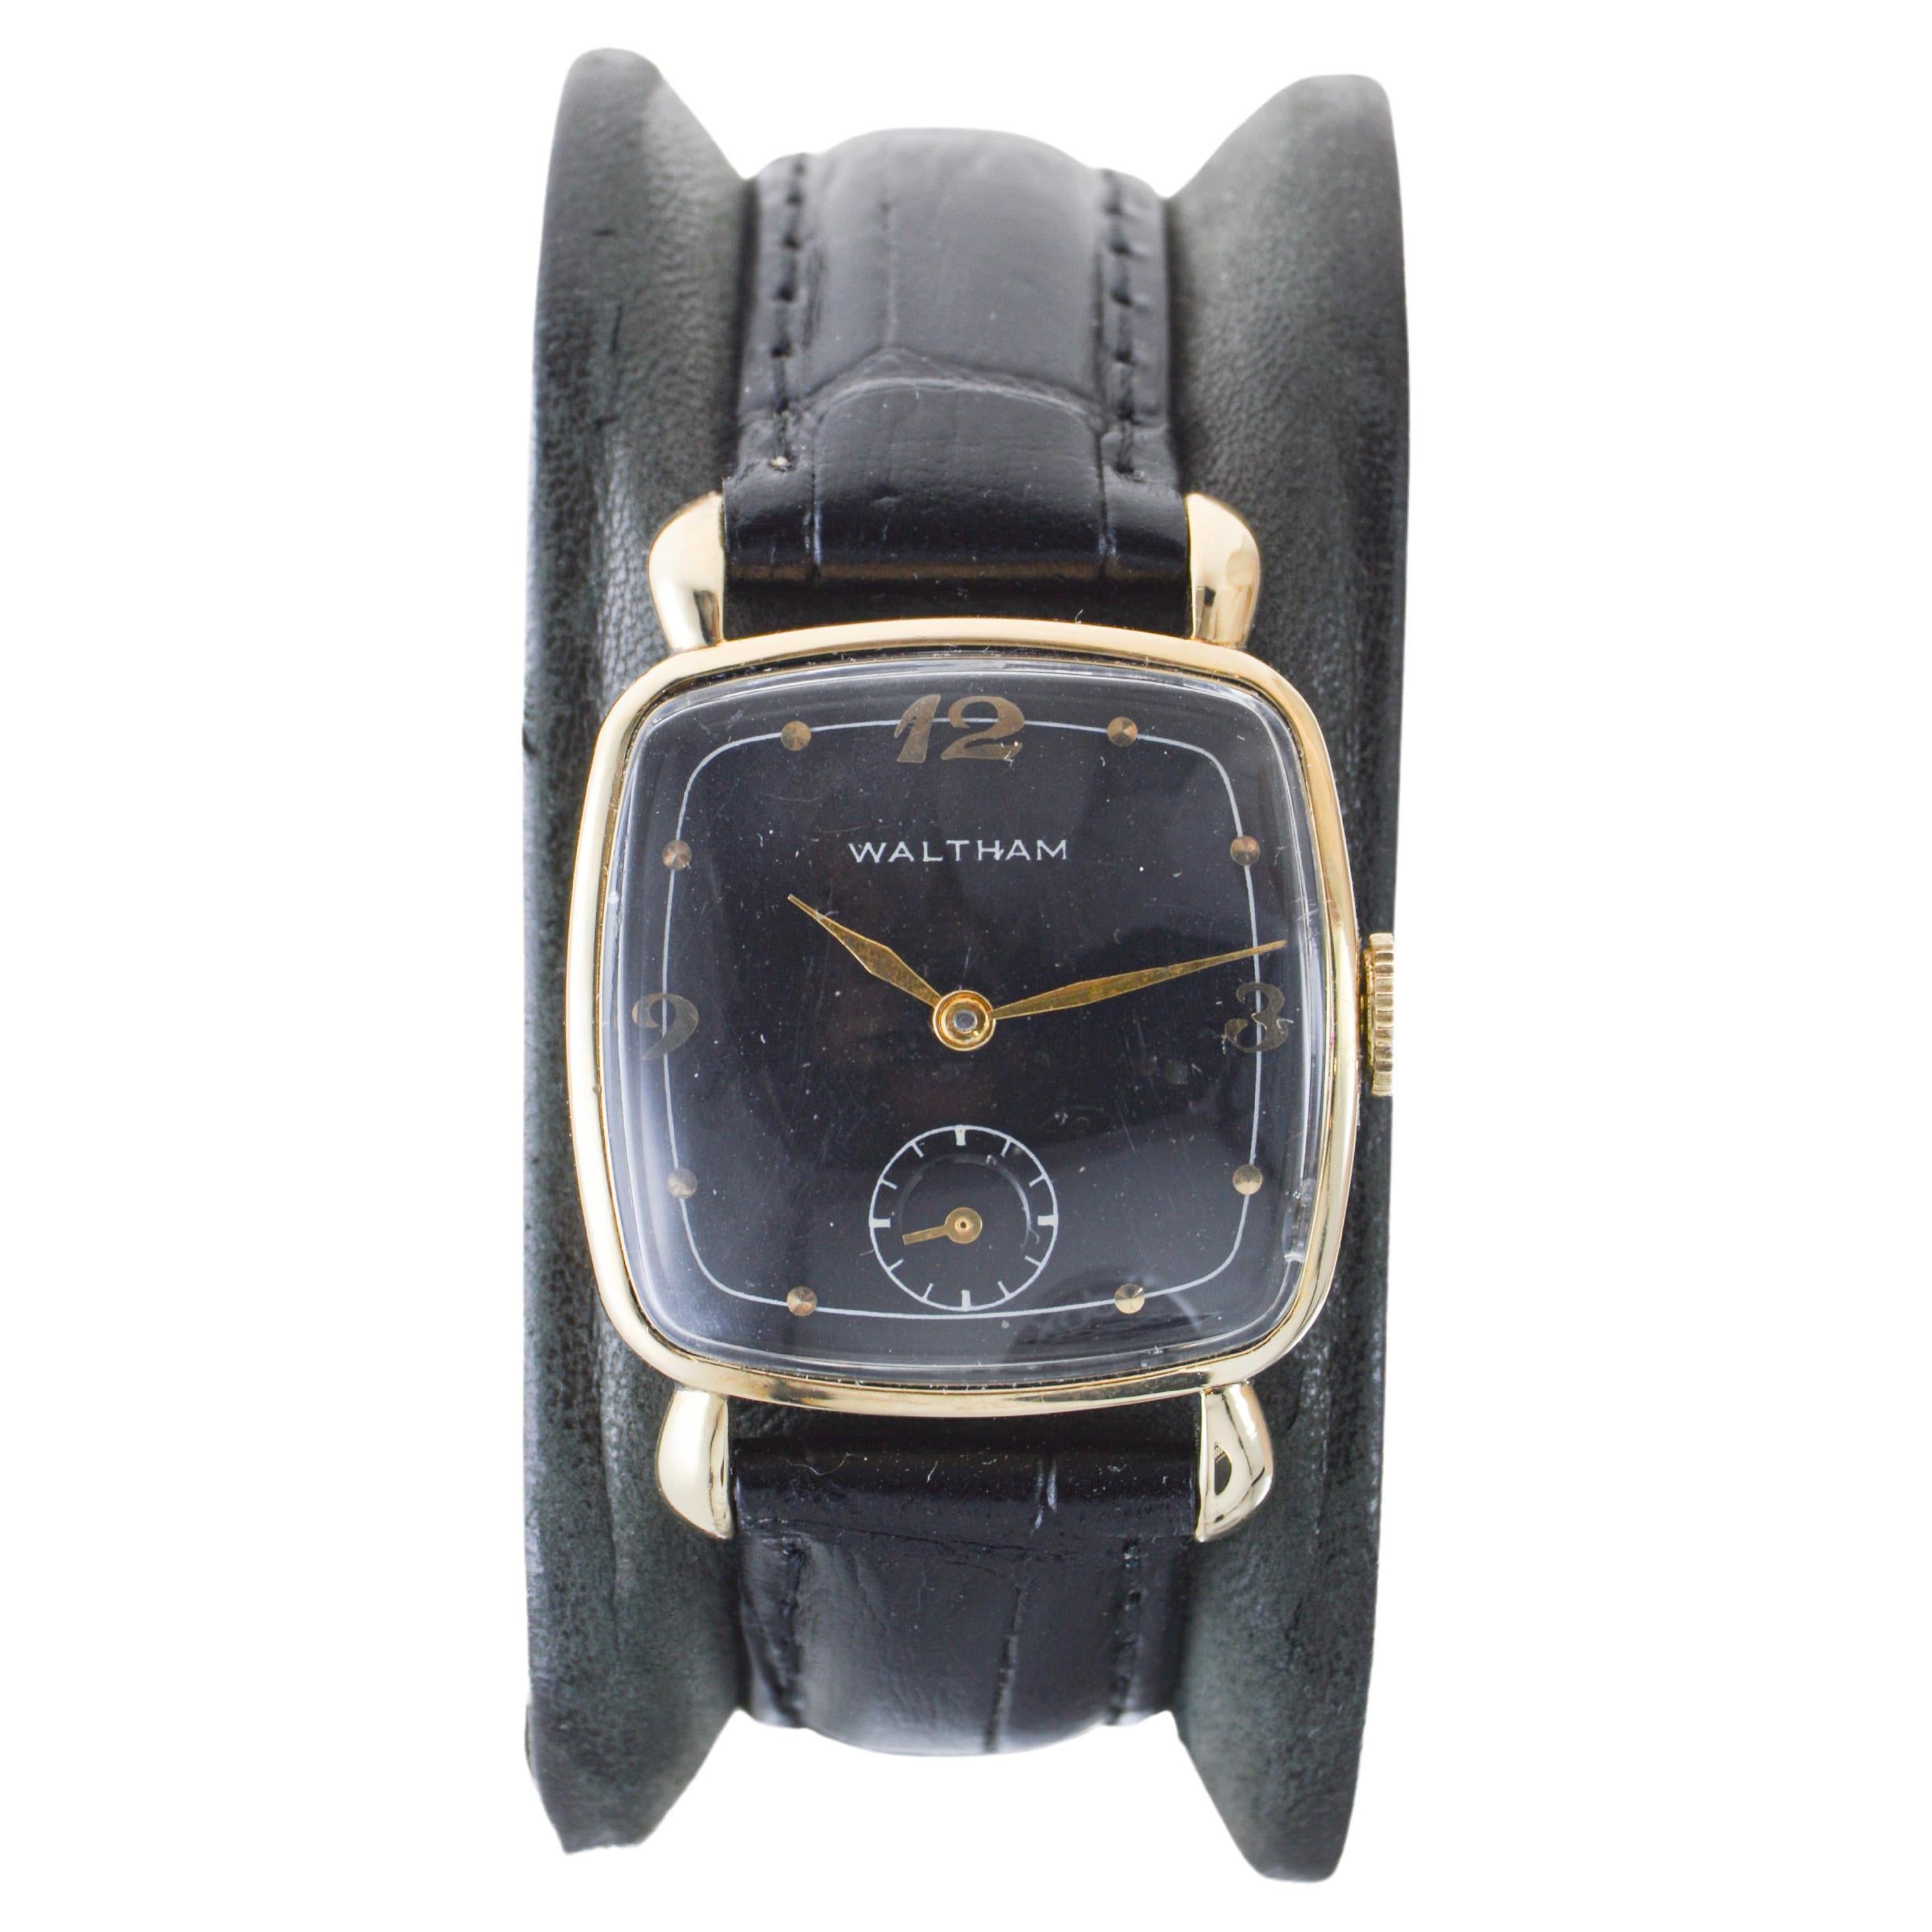 Waltham 14k Art-Déco-Uhr in Kissenform mit originalem, seltenem schwarzem Zifferblatt, Kissenschliff